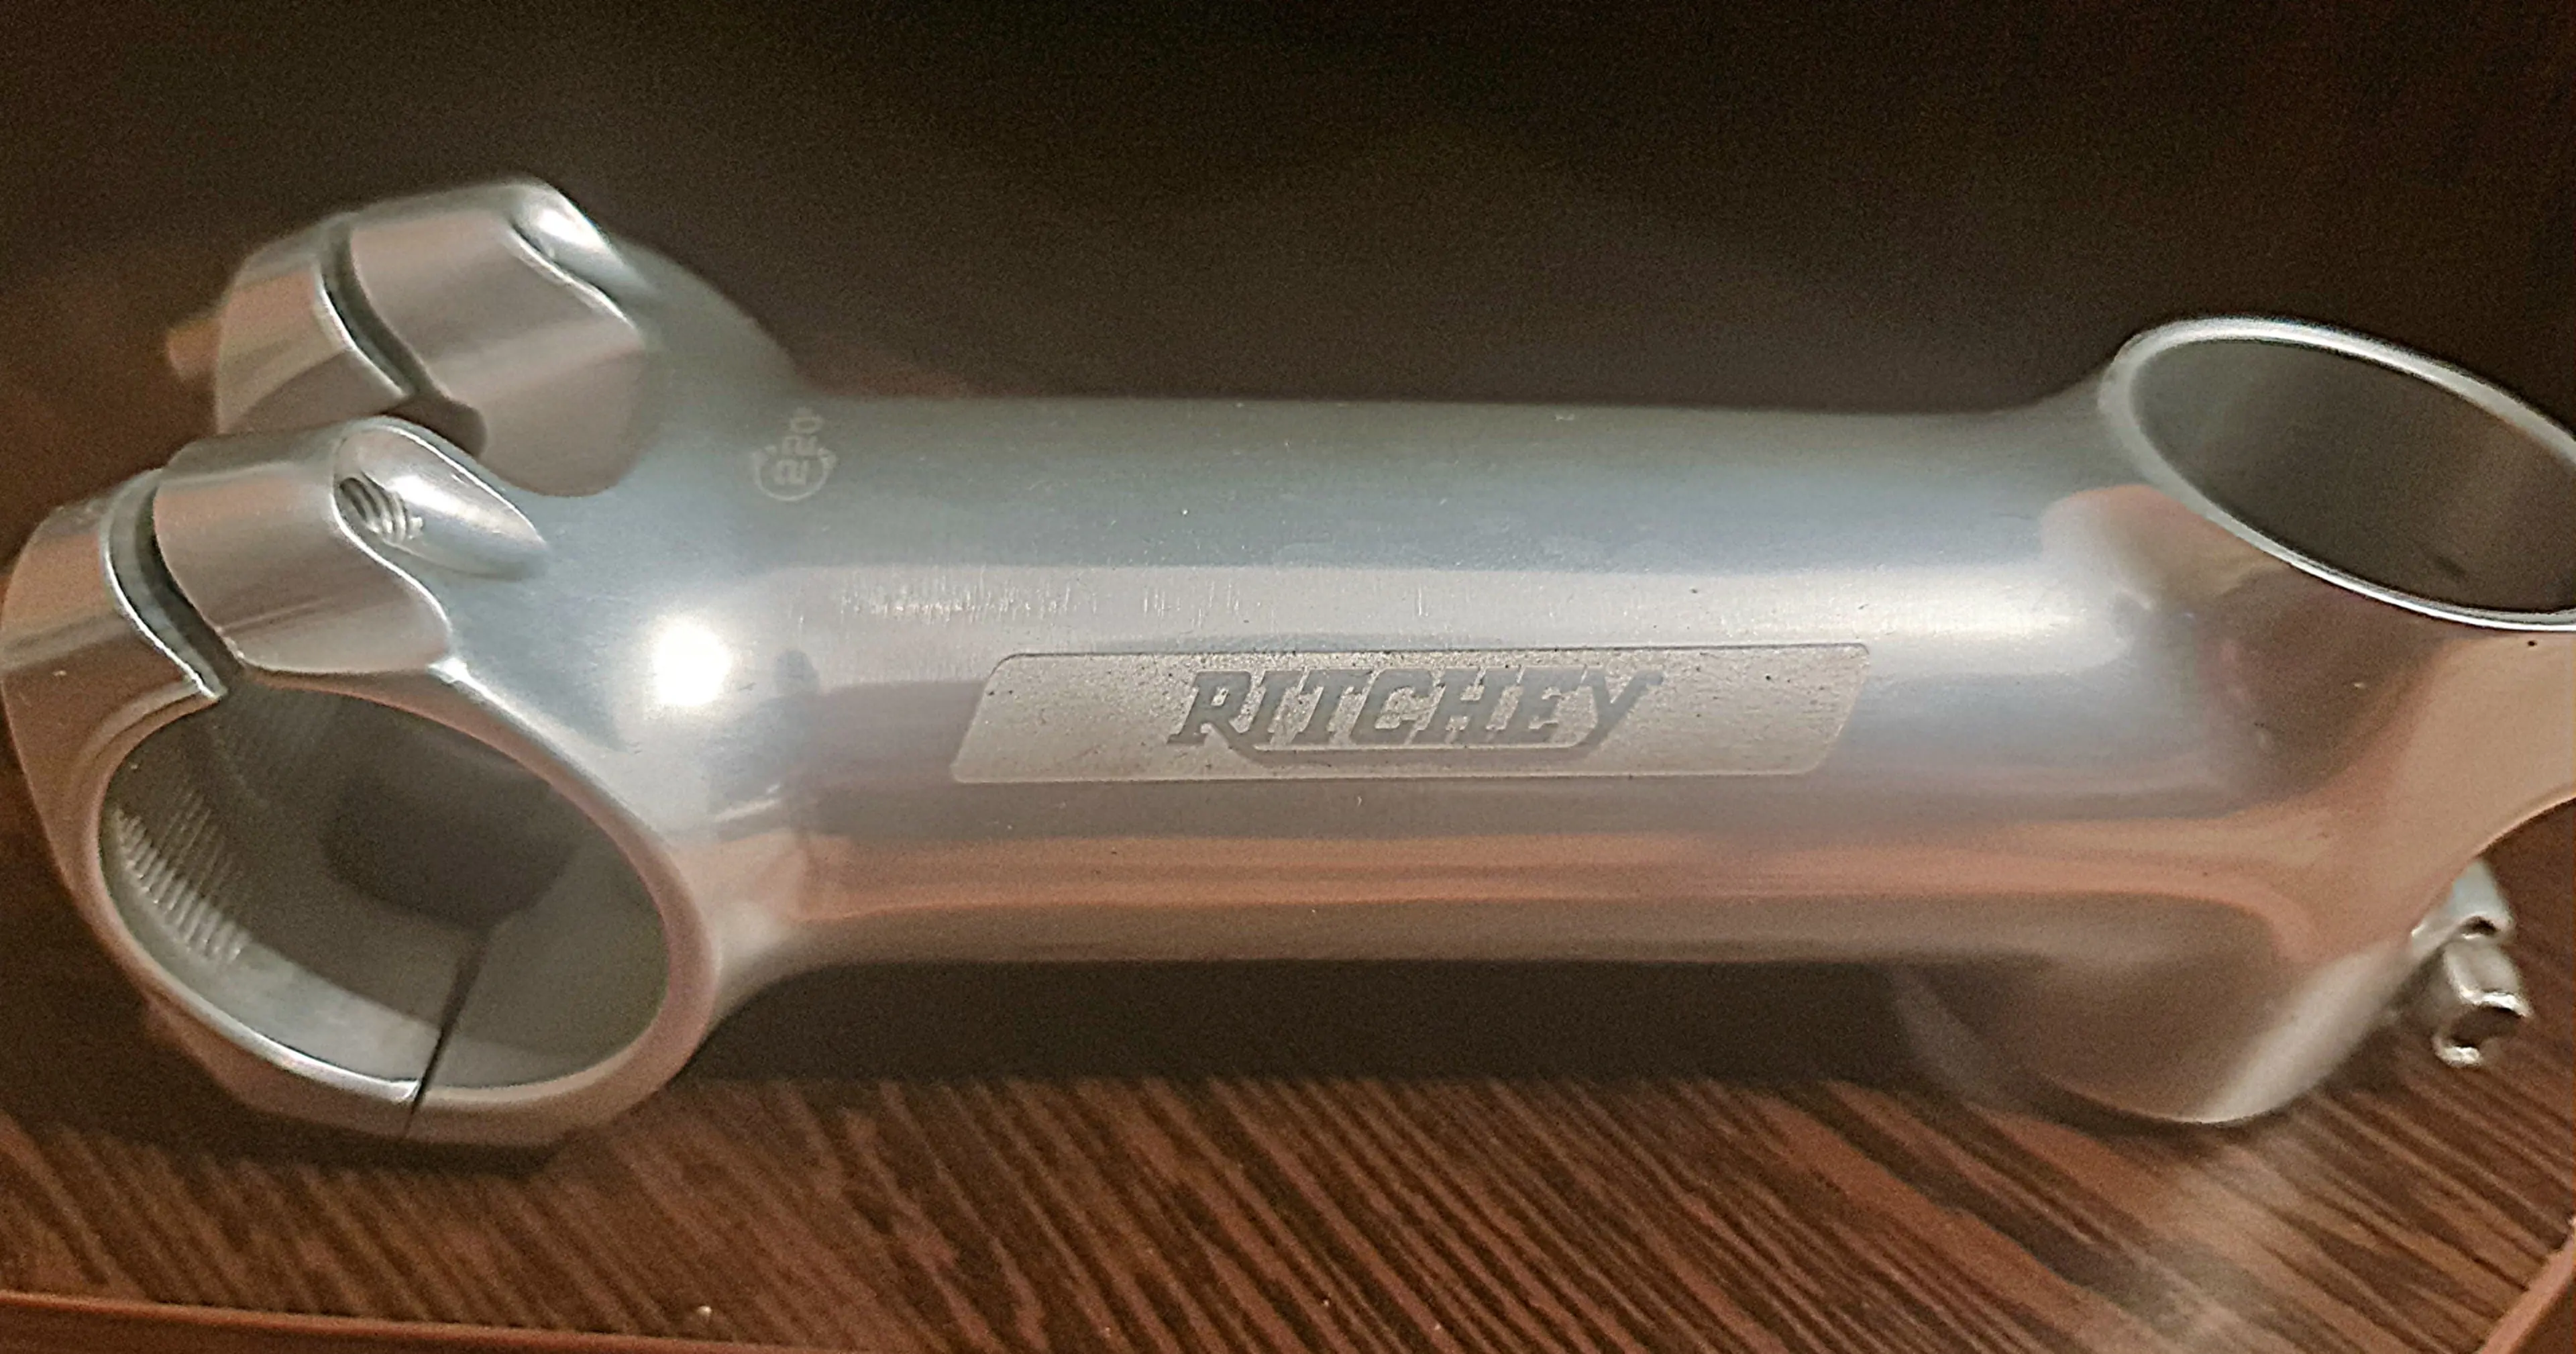 2. Ritchey 110